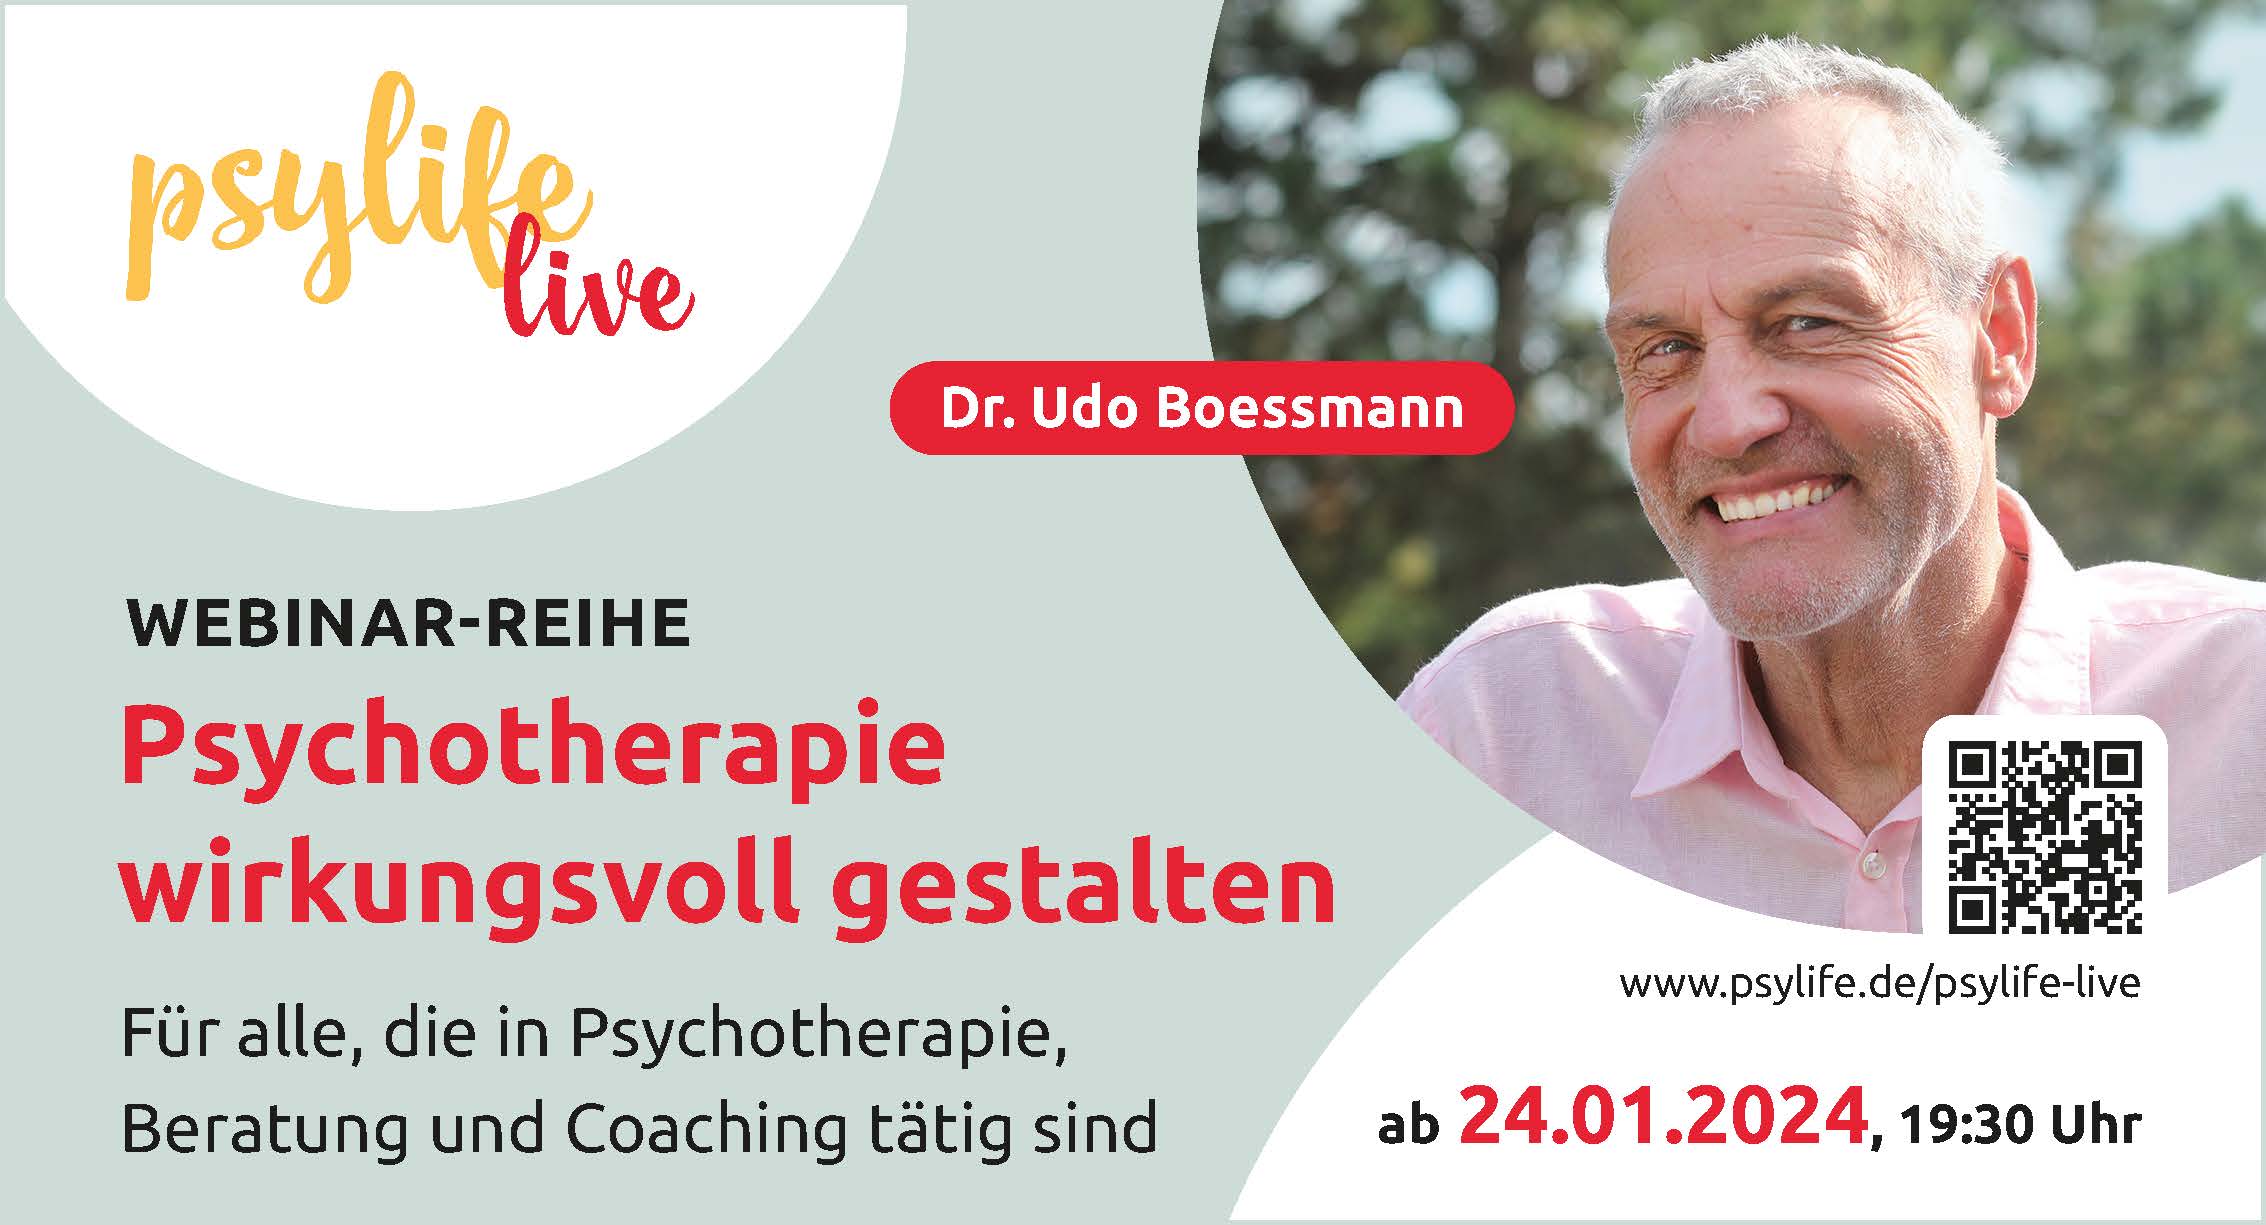 Anzeige zur Webinar-Reihe mit Udo Boessmann